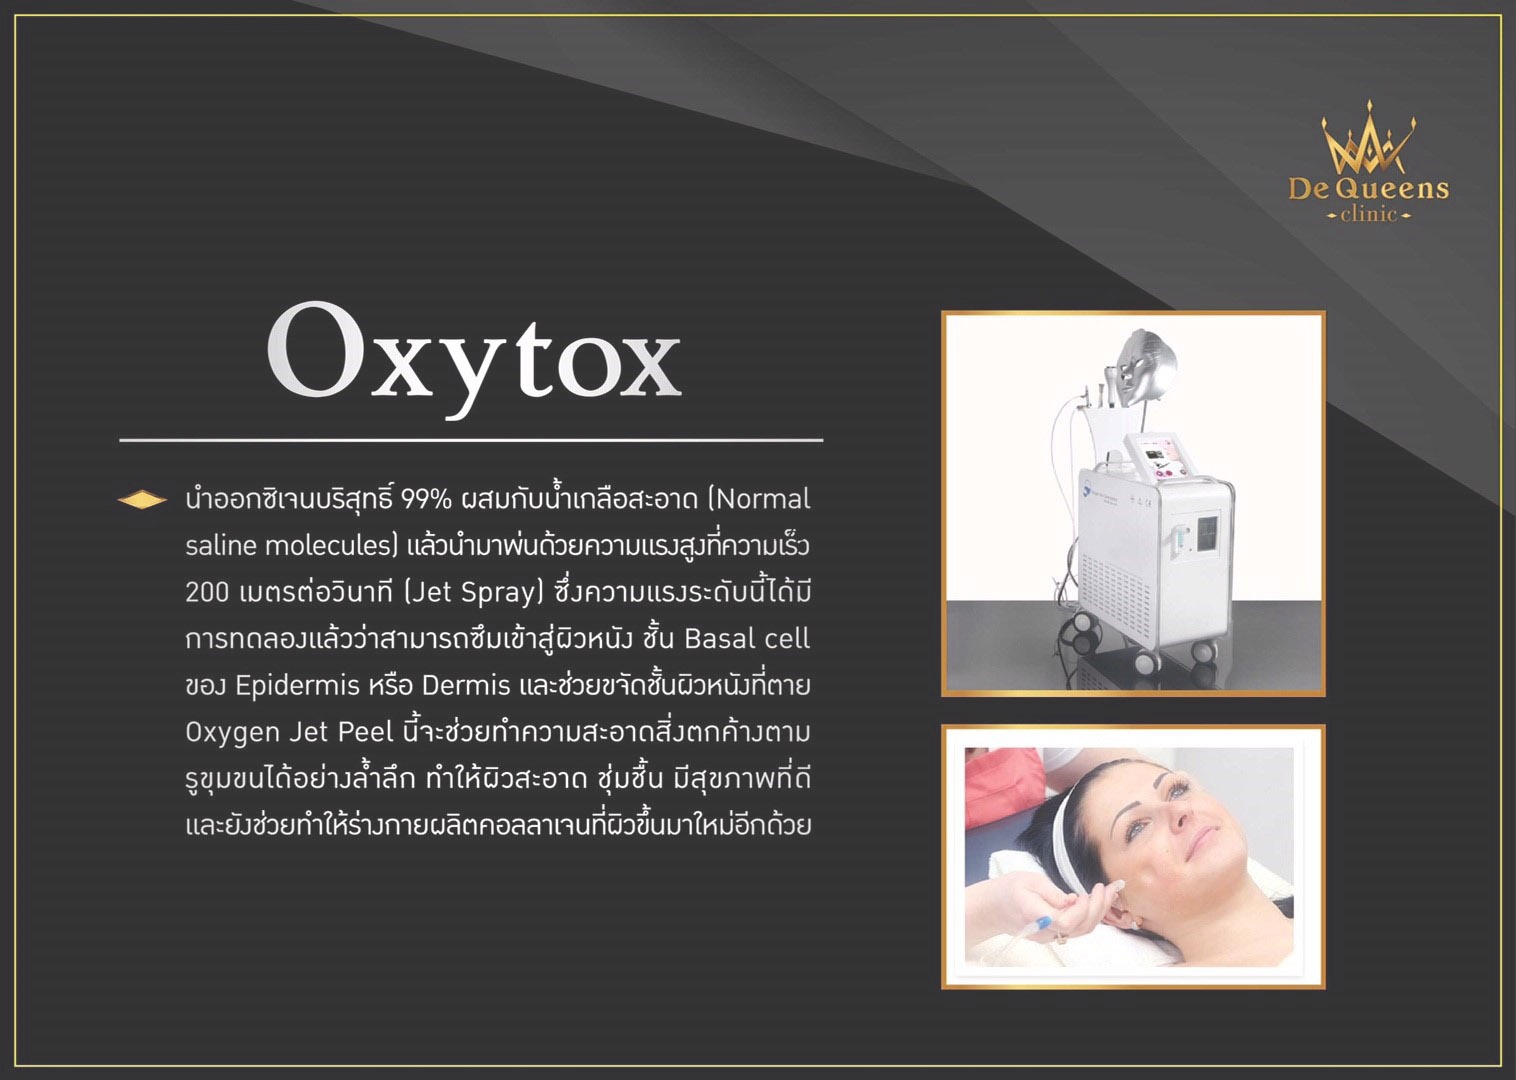 Oxytox